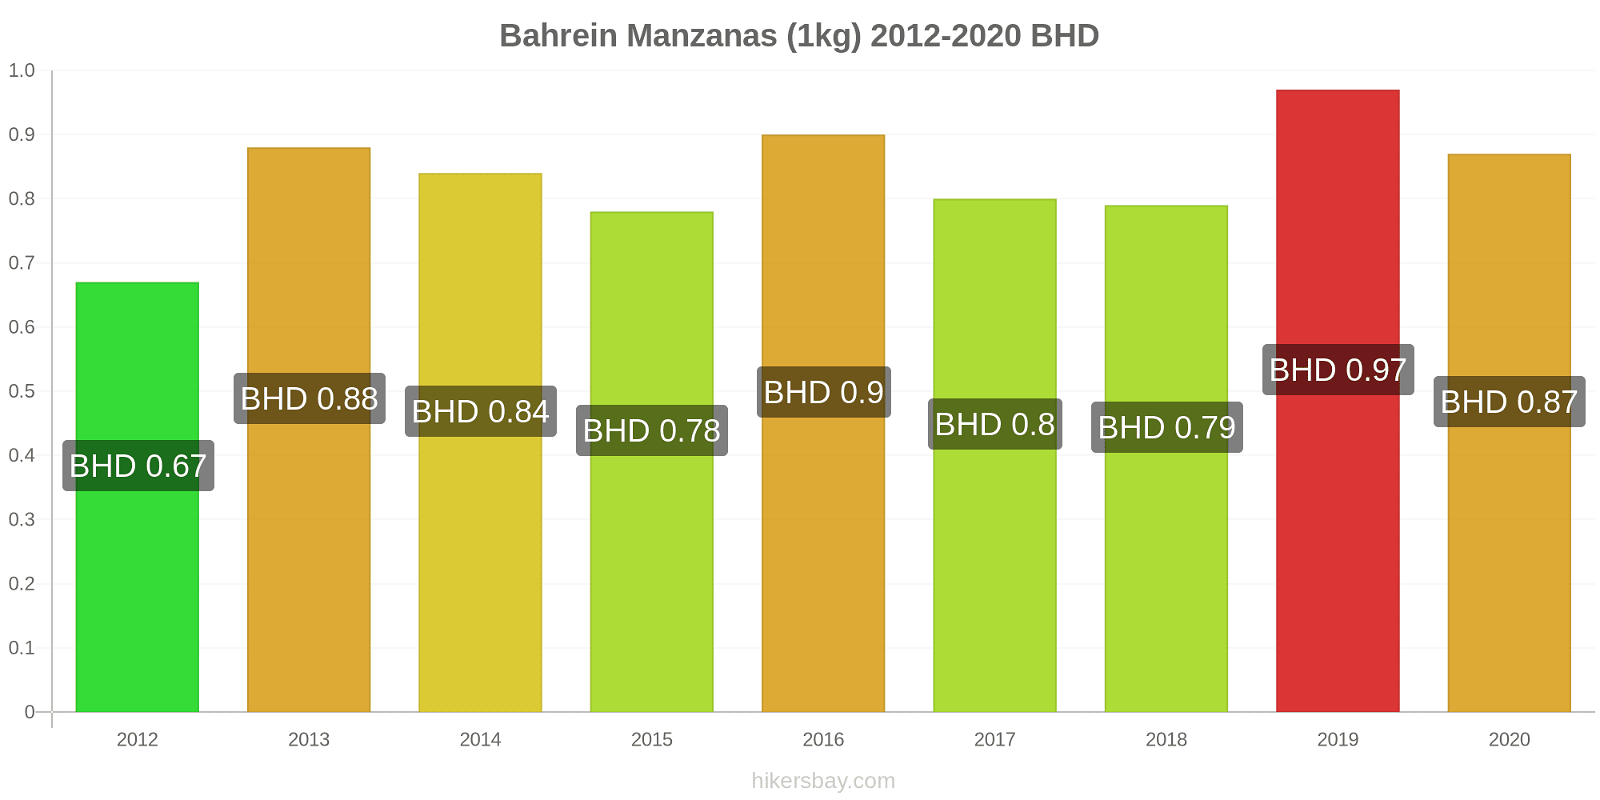 Bahrein cambios de precios Manzanas (1kg) hikersbay.com